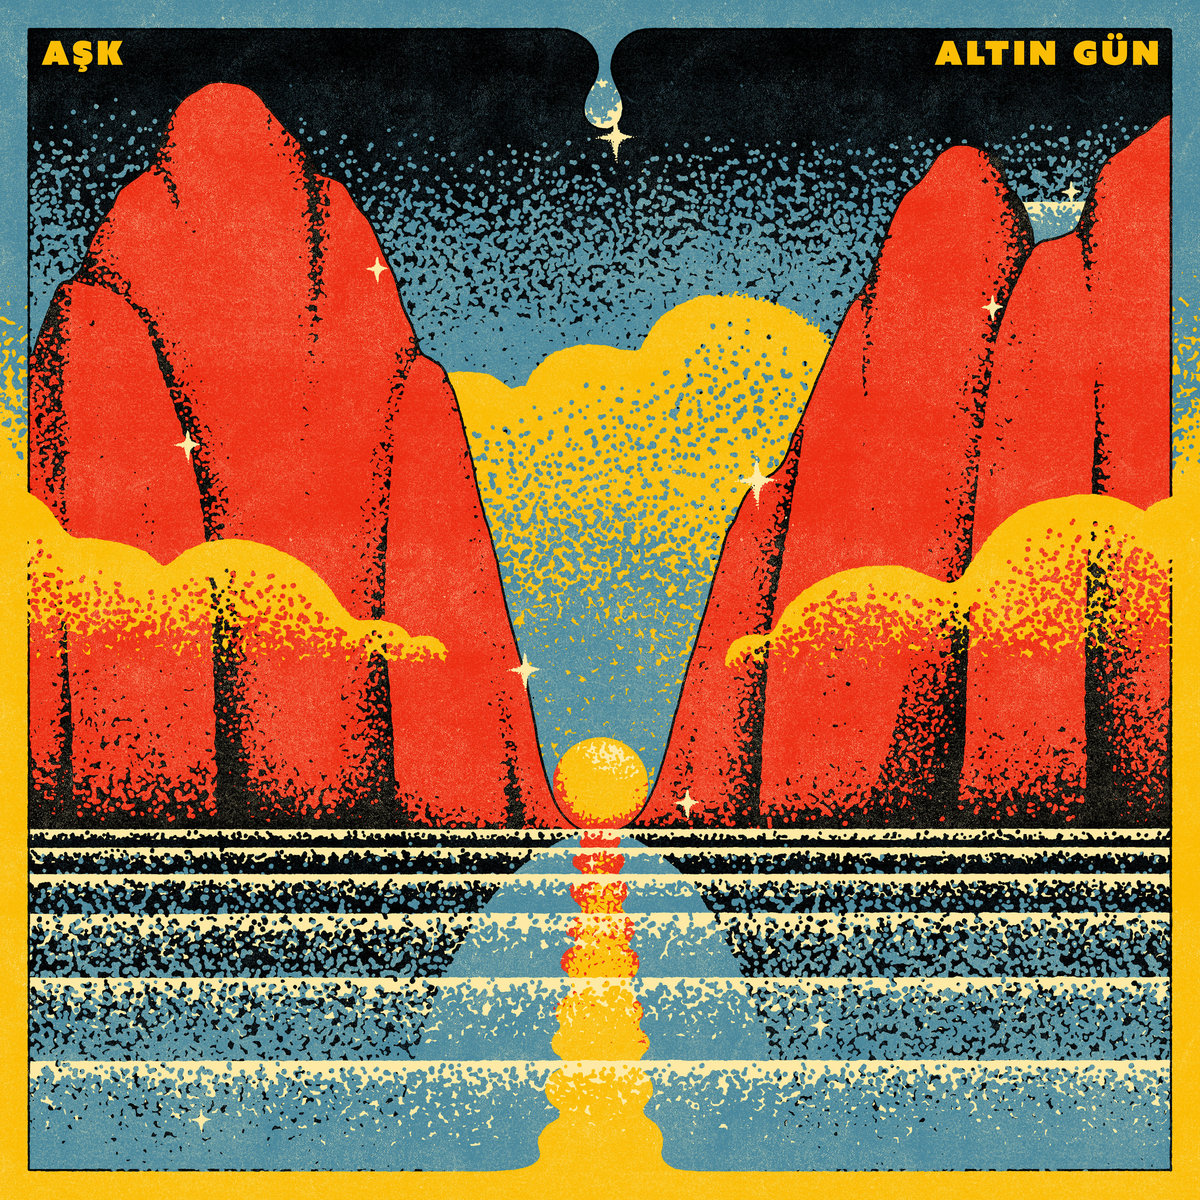 Altin Gun "Ask" LP